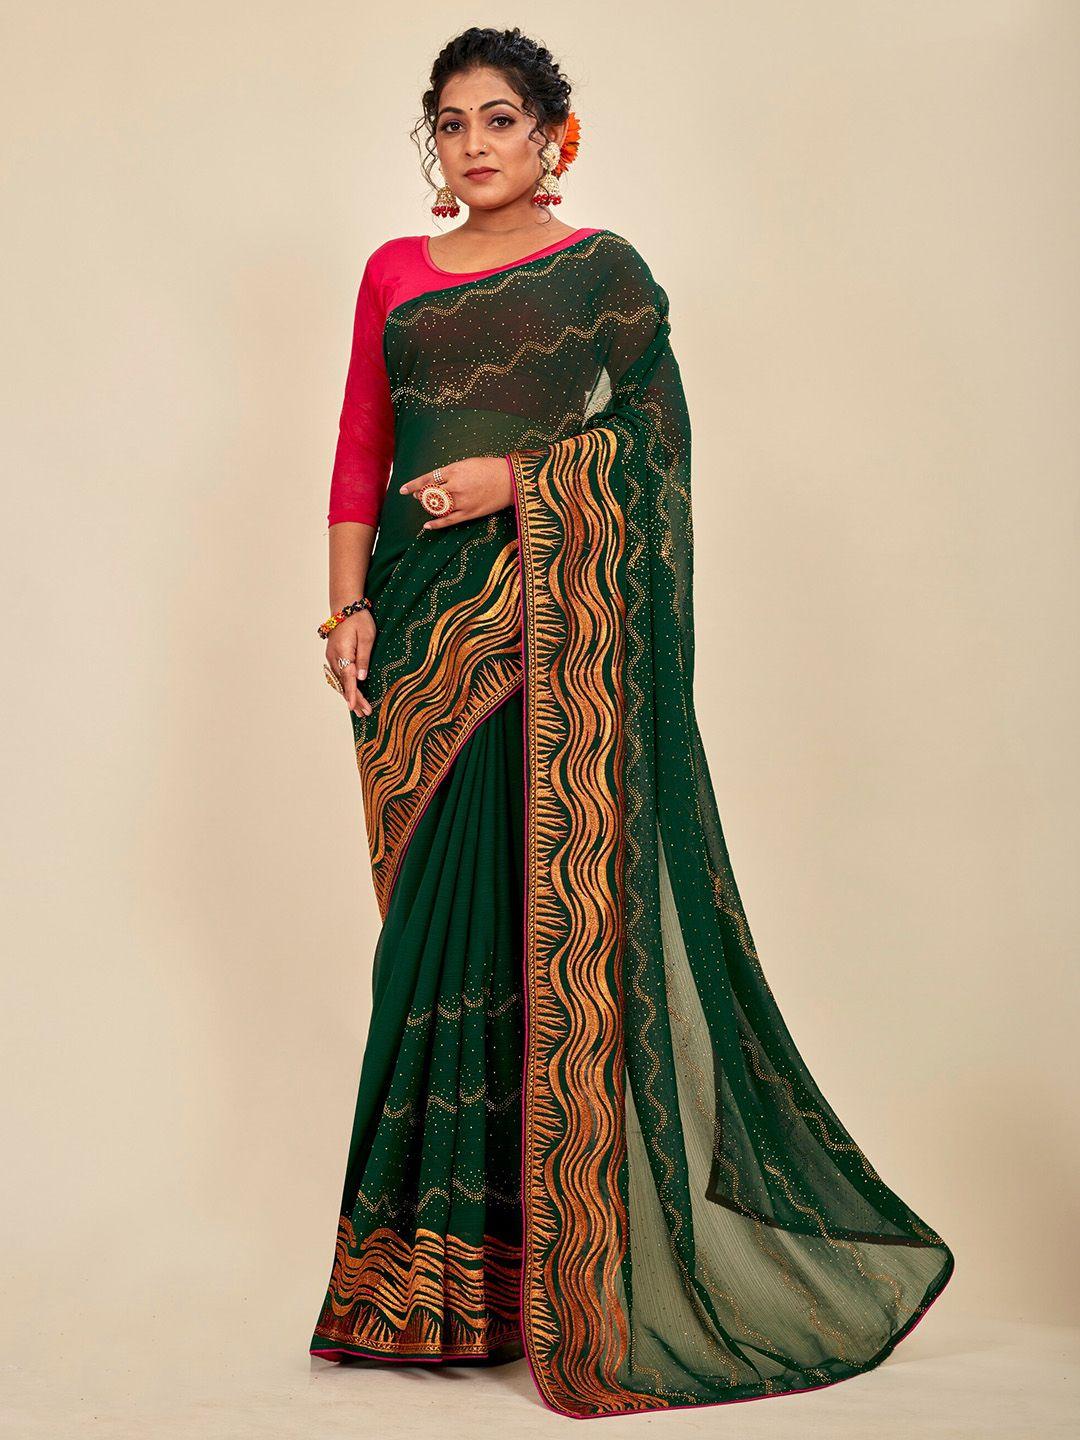 mahalasa olive green embellished embroidered pure georgette designer saree